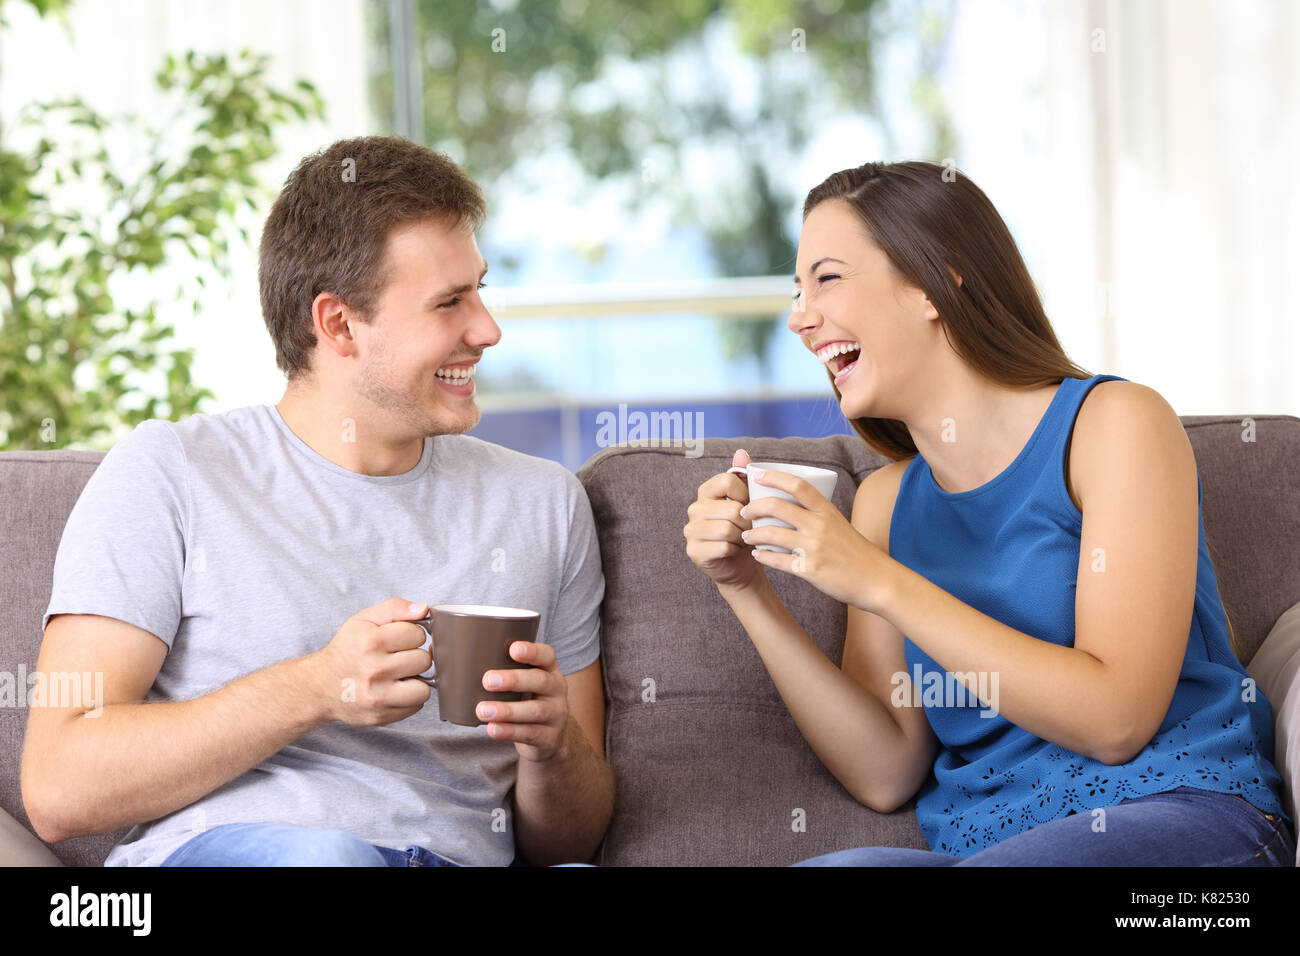 Deux personnes parler et rire fort assis sur un canapé à la maison Banque D'Images